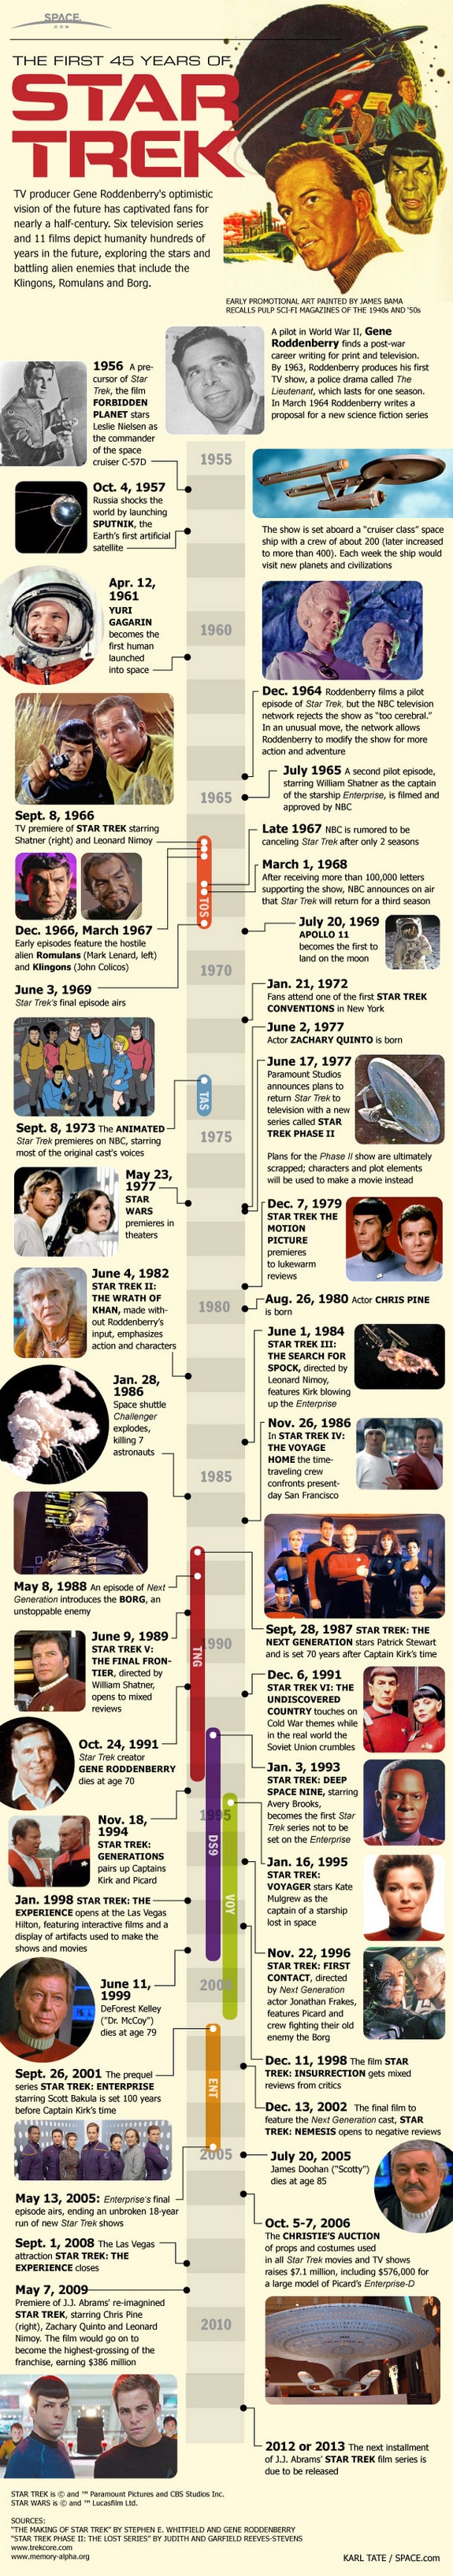 Star Trek 45 years Infographic